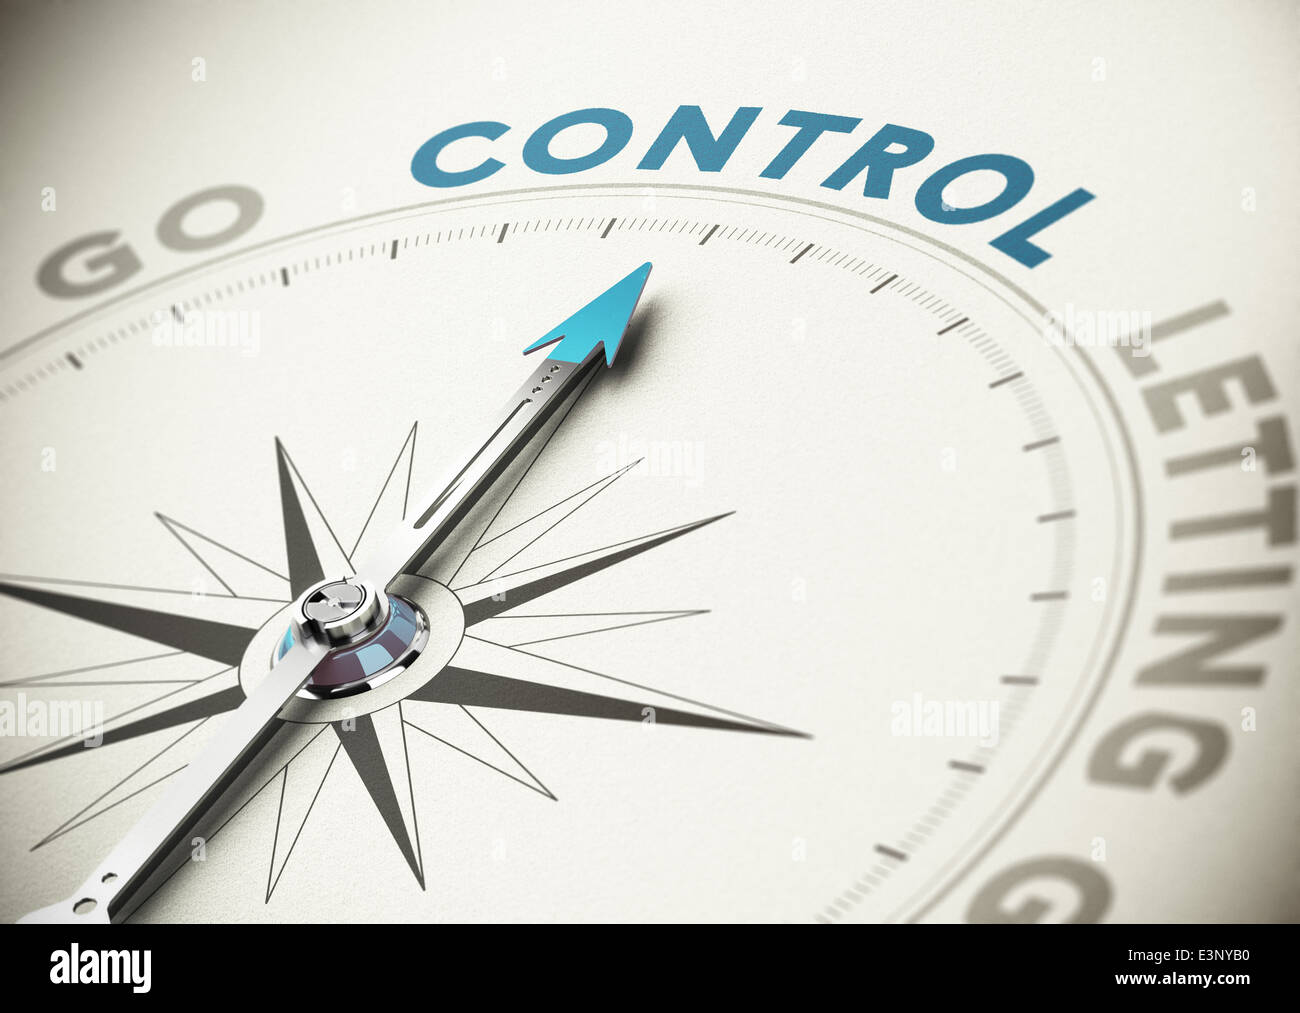 Psychologie-Konzept. Kompass-Nadel zeigt das Wort Kontrolle mit blau und Beige Tönen. Stockfoto